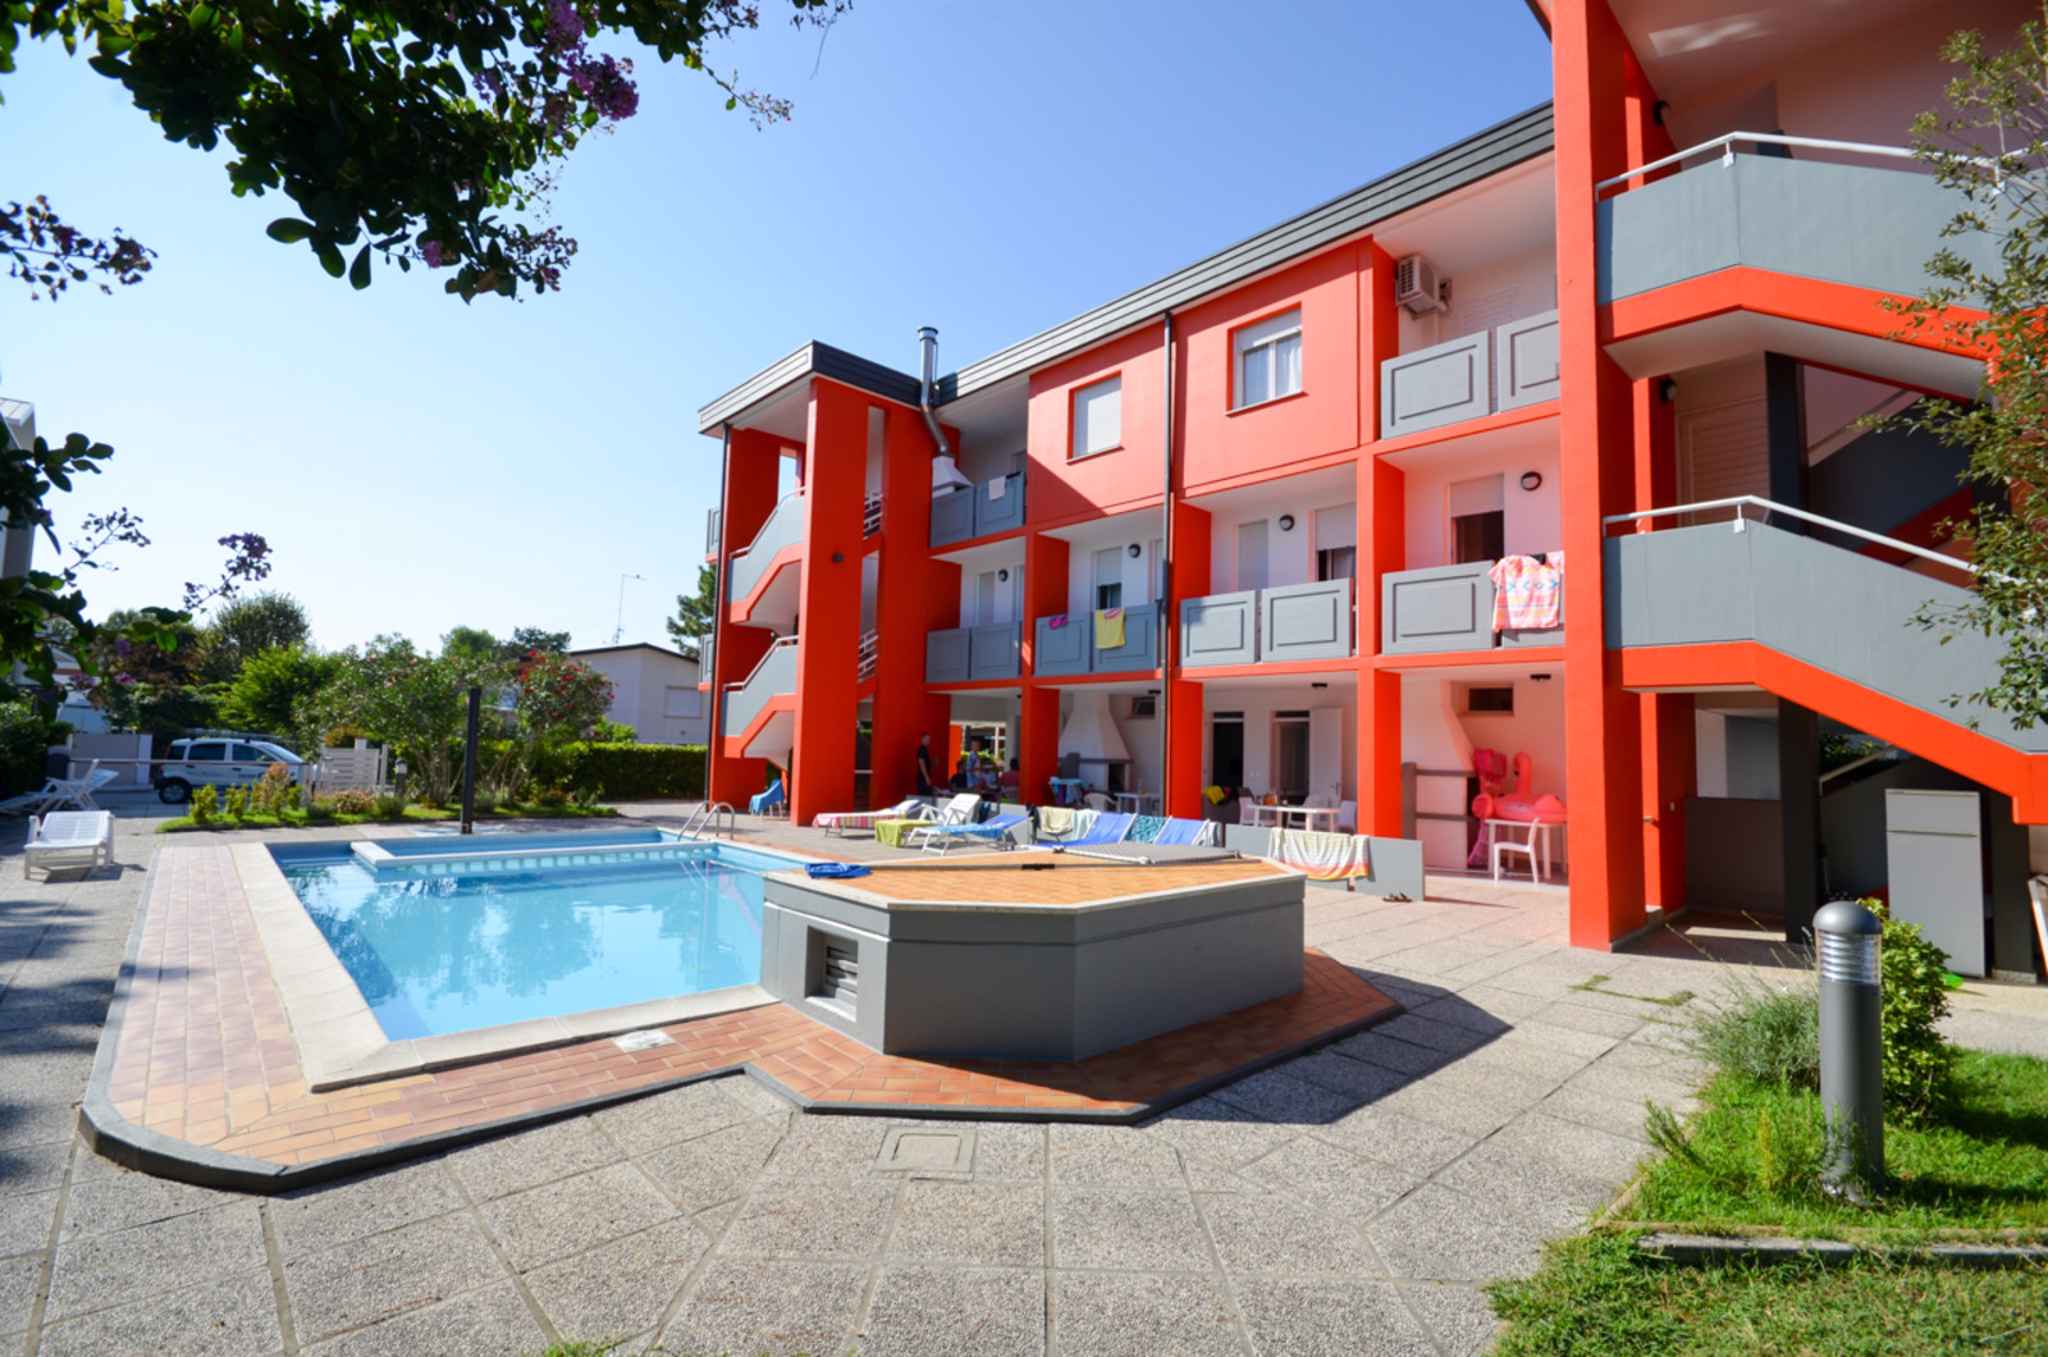 Ferienwohnung in moderner Residenz mit Pool  in Europa